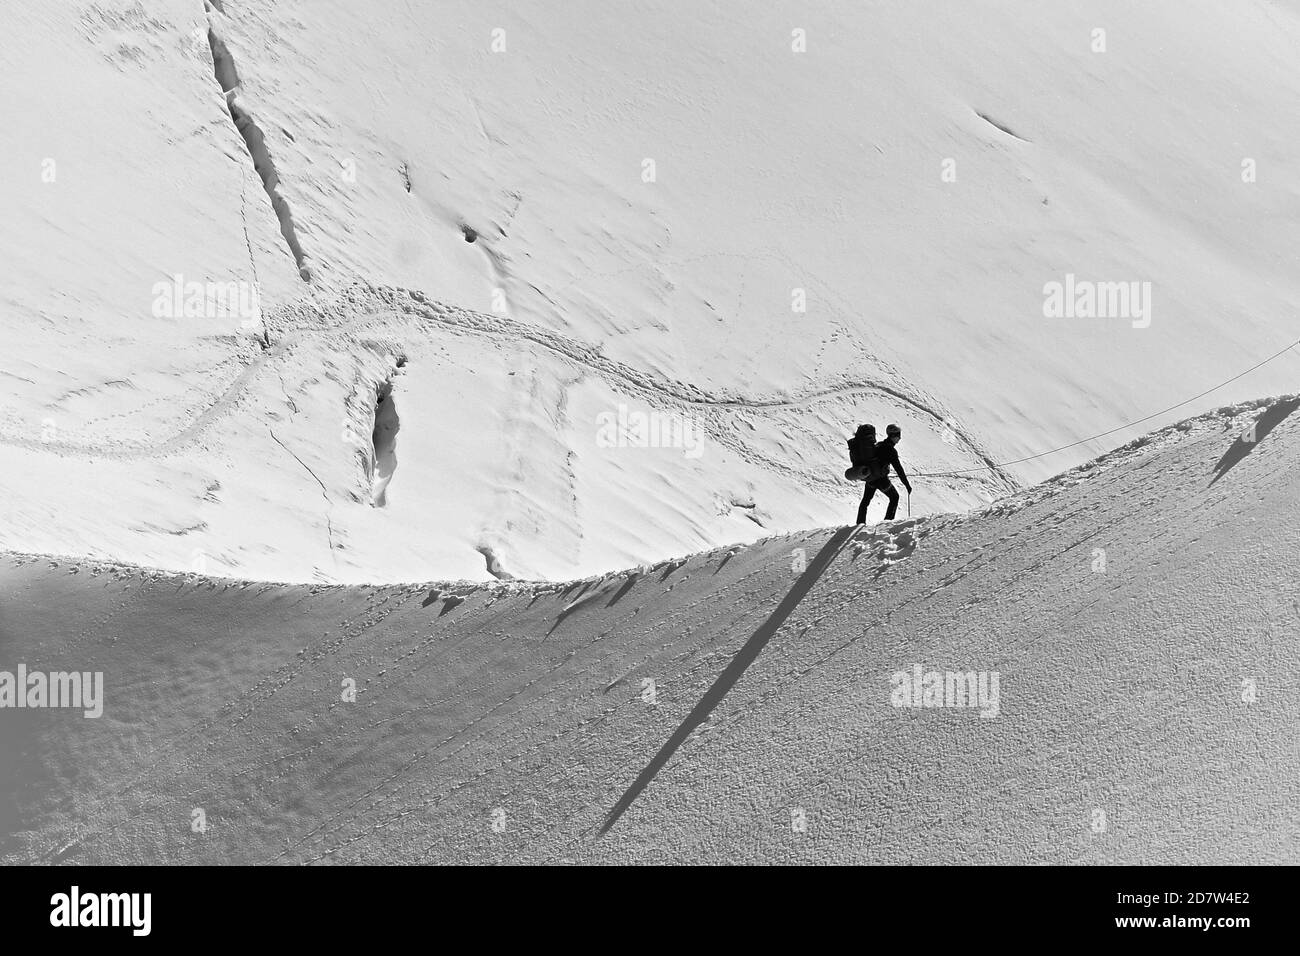 Trekking escursionisti su una dorsale innevata sulla Valle Bianca, massiccio del Monte Bianco da Aiguille du Midi 3842m, Chamonix, Francia. Immagine creativa in bianco e nero. Foto Stock